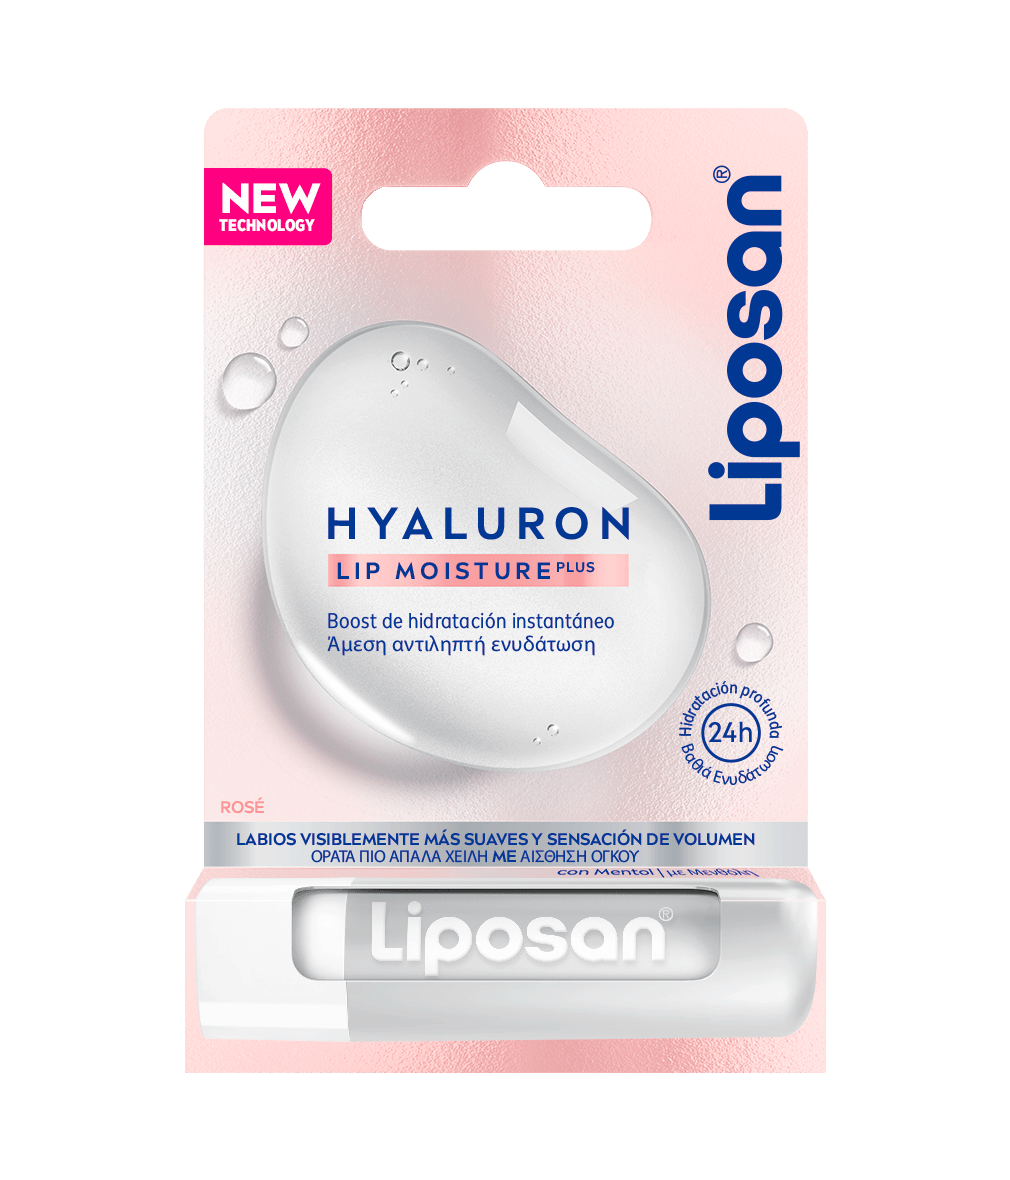 Liposan Hyaluron